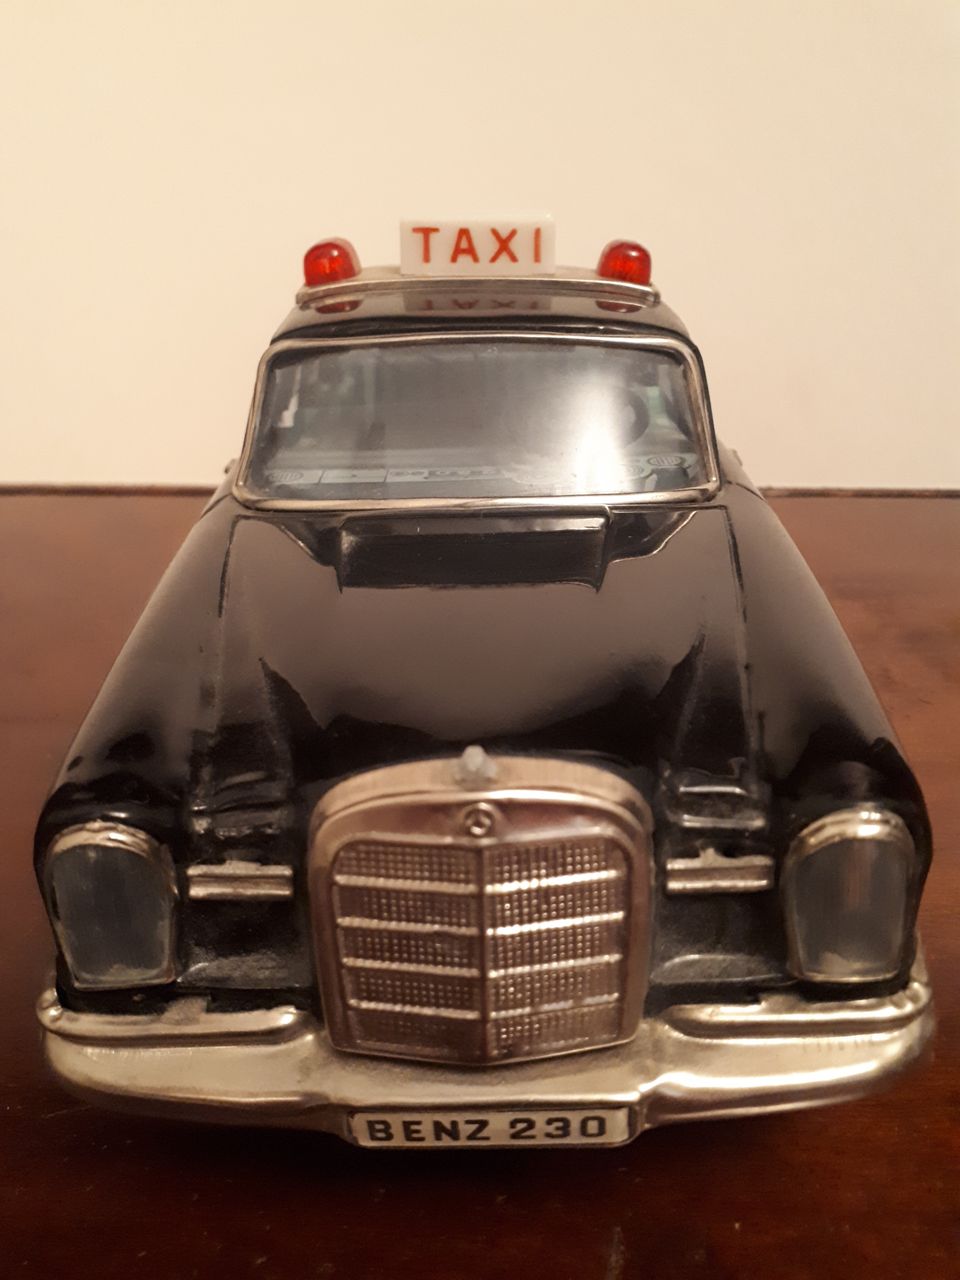 Mercedes Benz taxi 1960 luvulta aito 60 luvun auto alkuperäisessä kunnossa